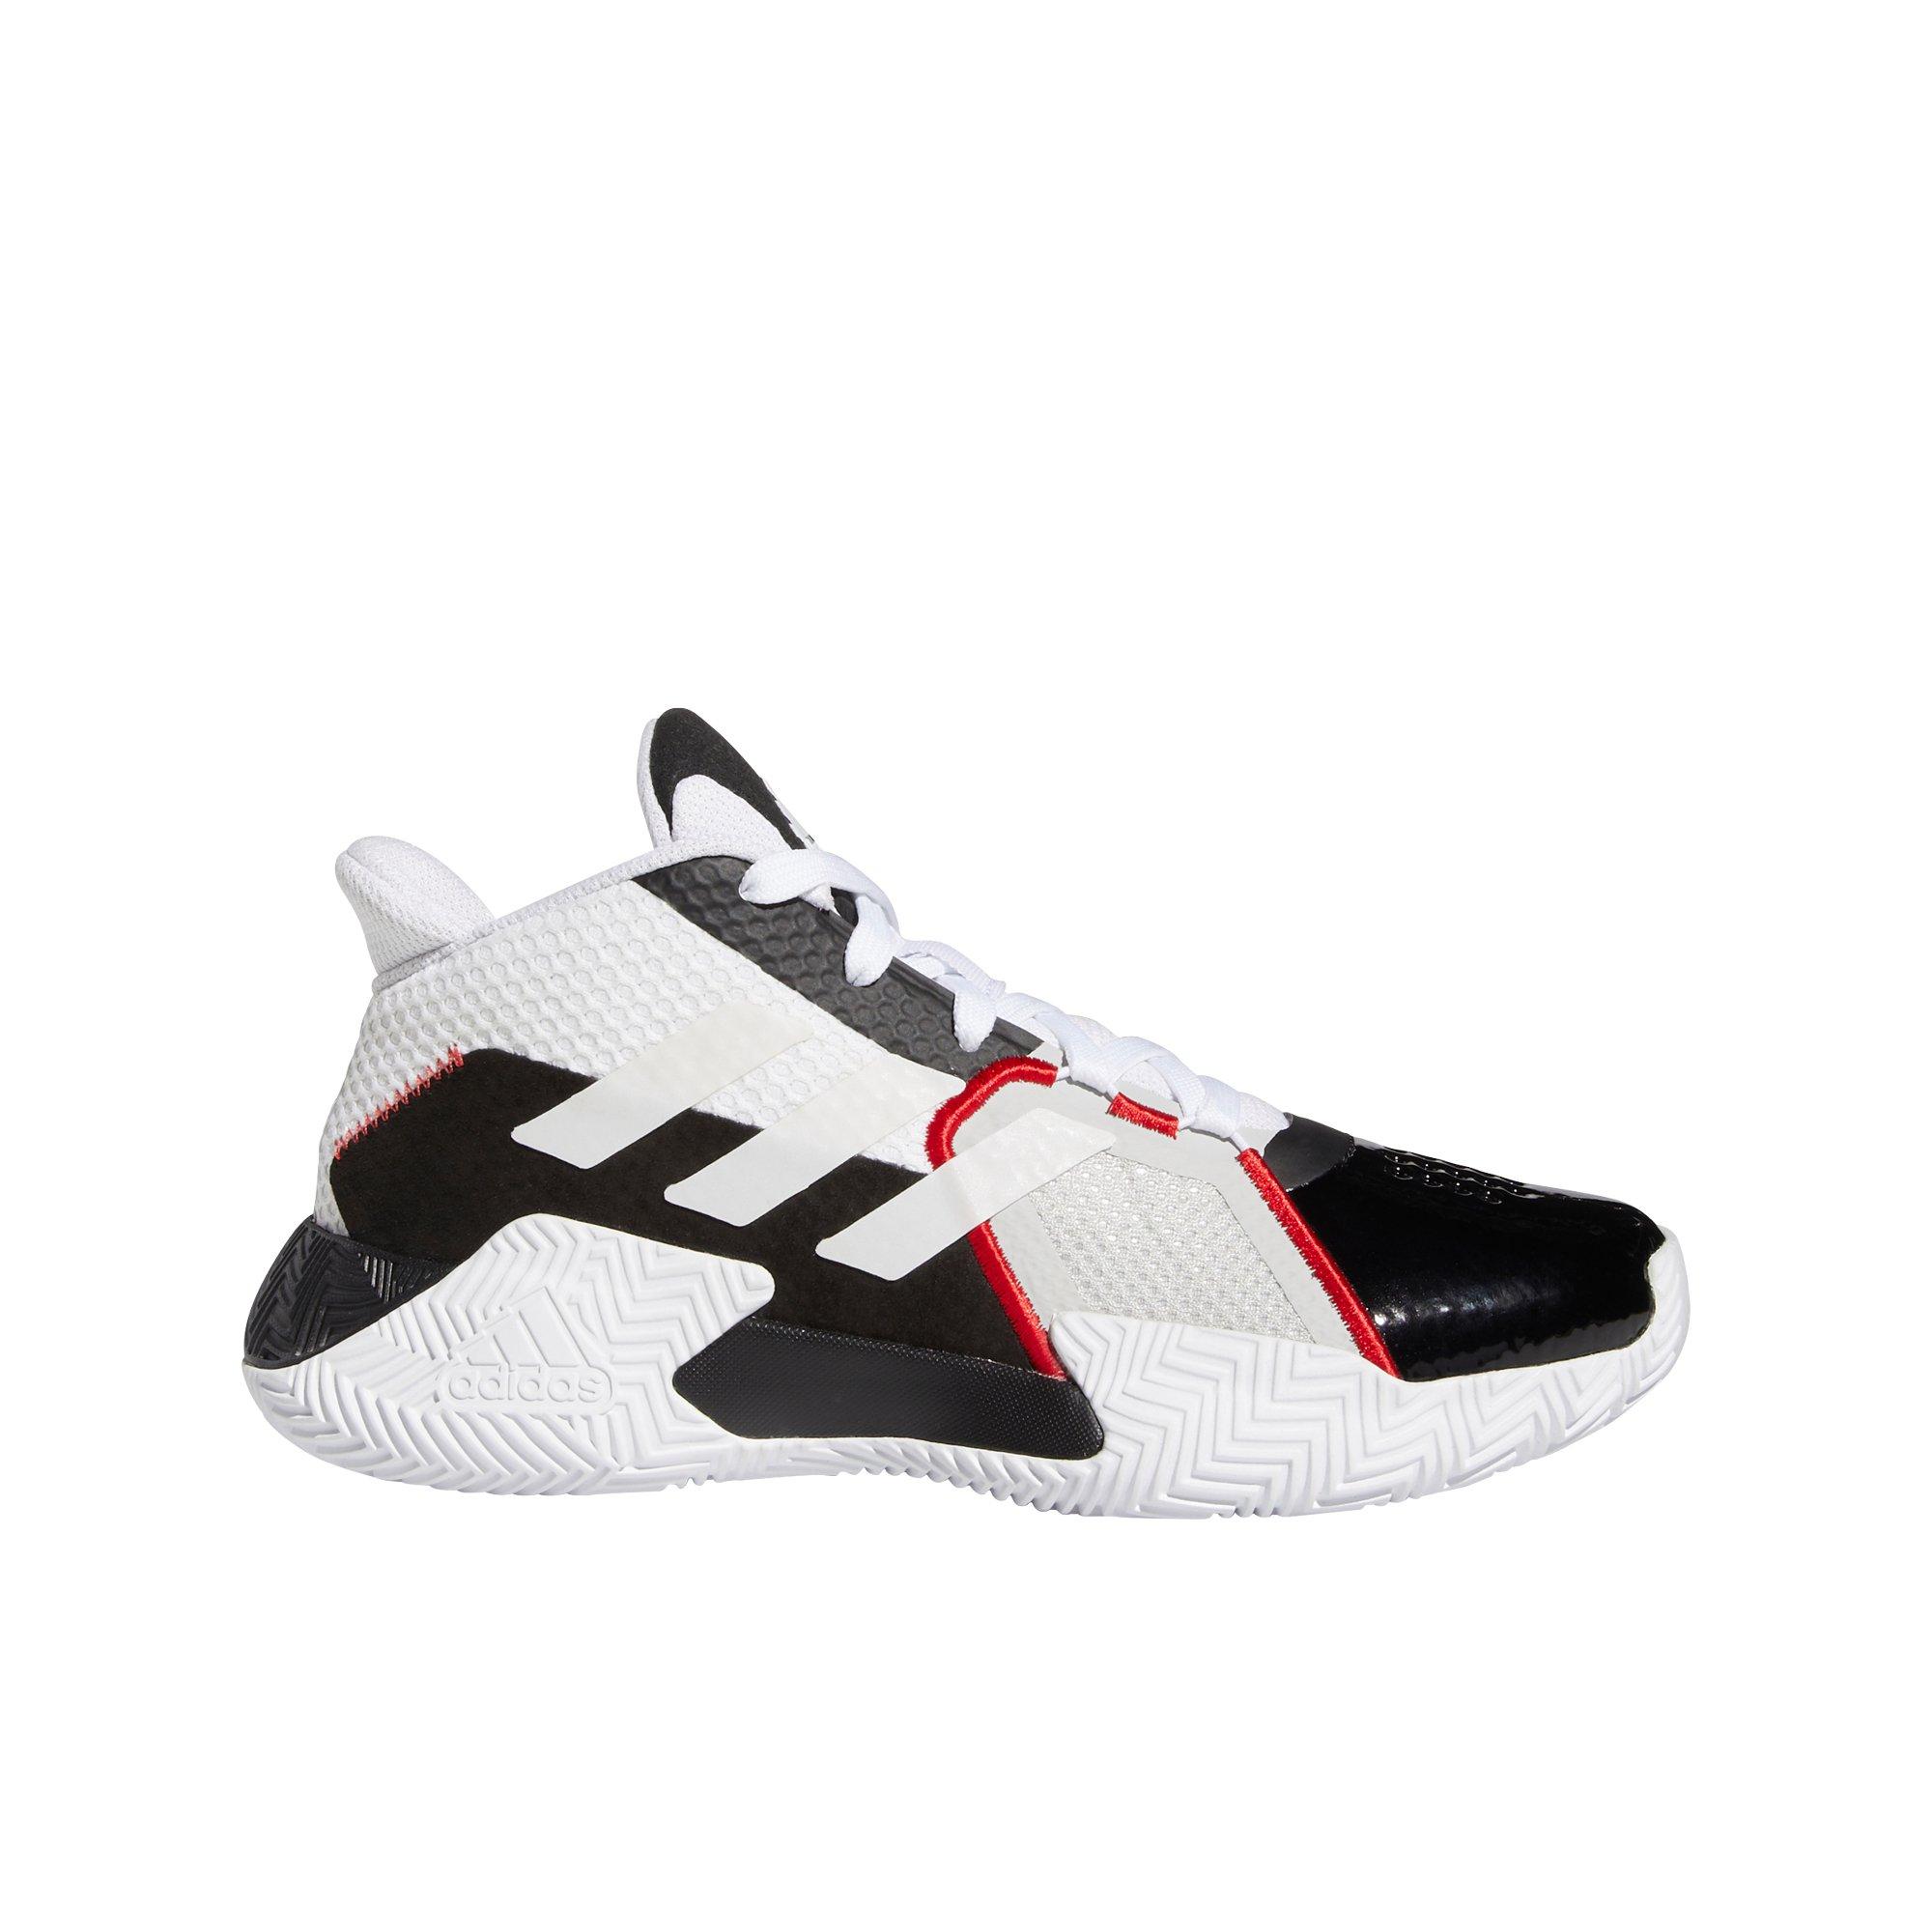 hibbett sports shoes adidas